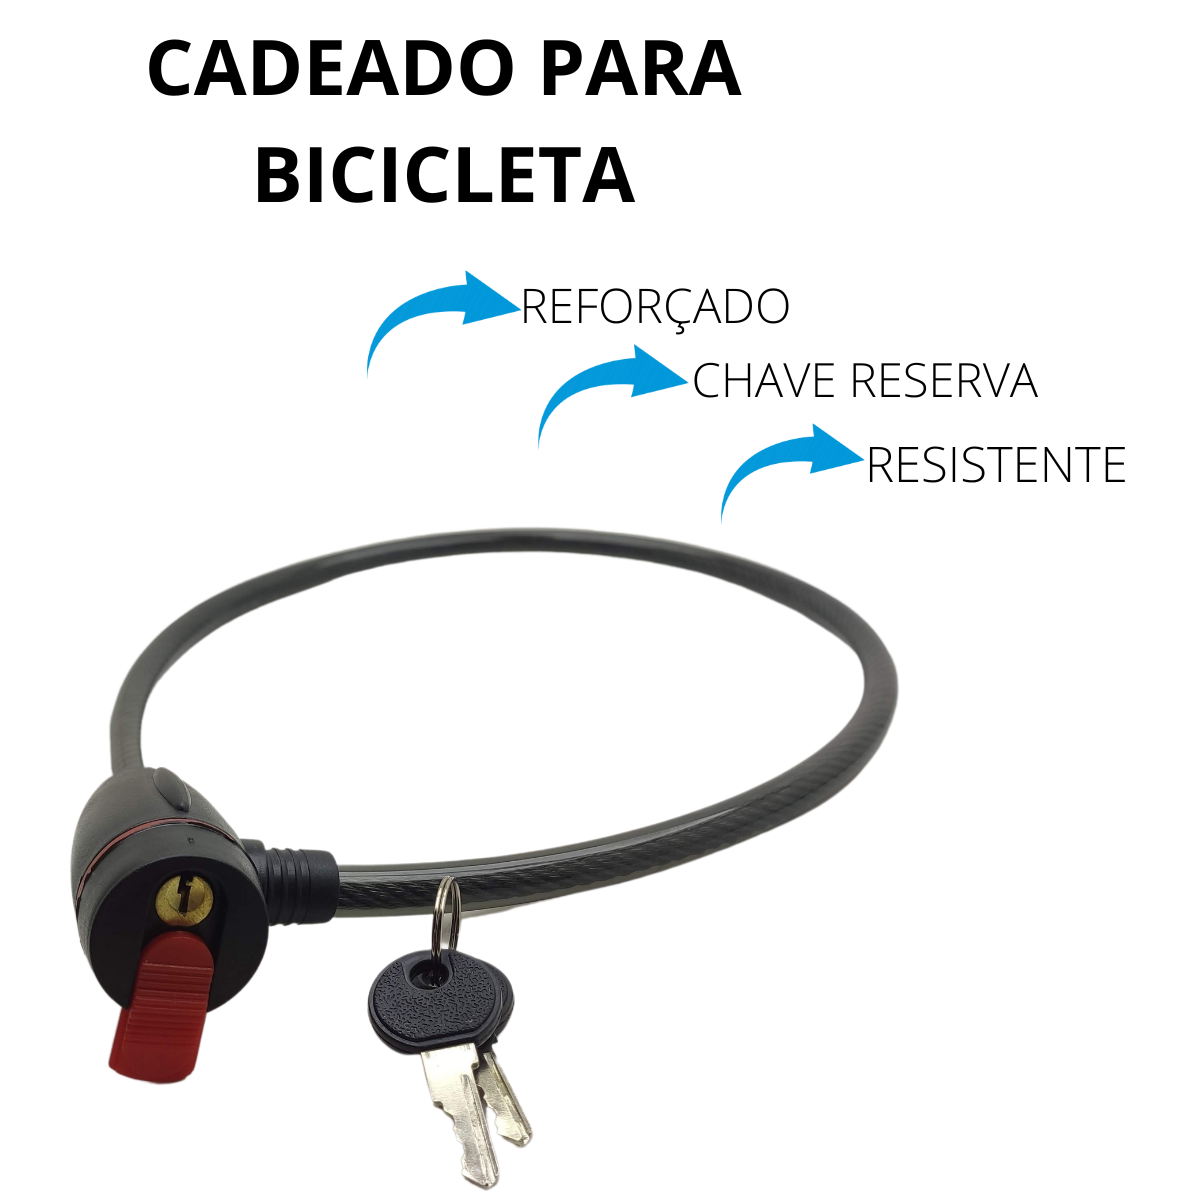 Cadeado Corpo Cilindrico Cabo de Aço Flexivel Bicicleta Motocicleta 1 Metro - 2